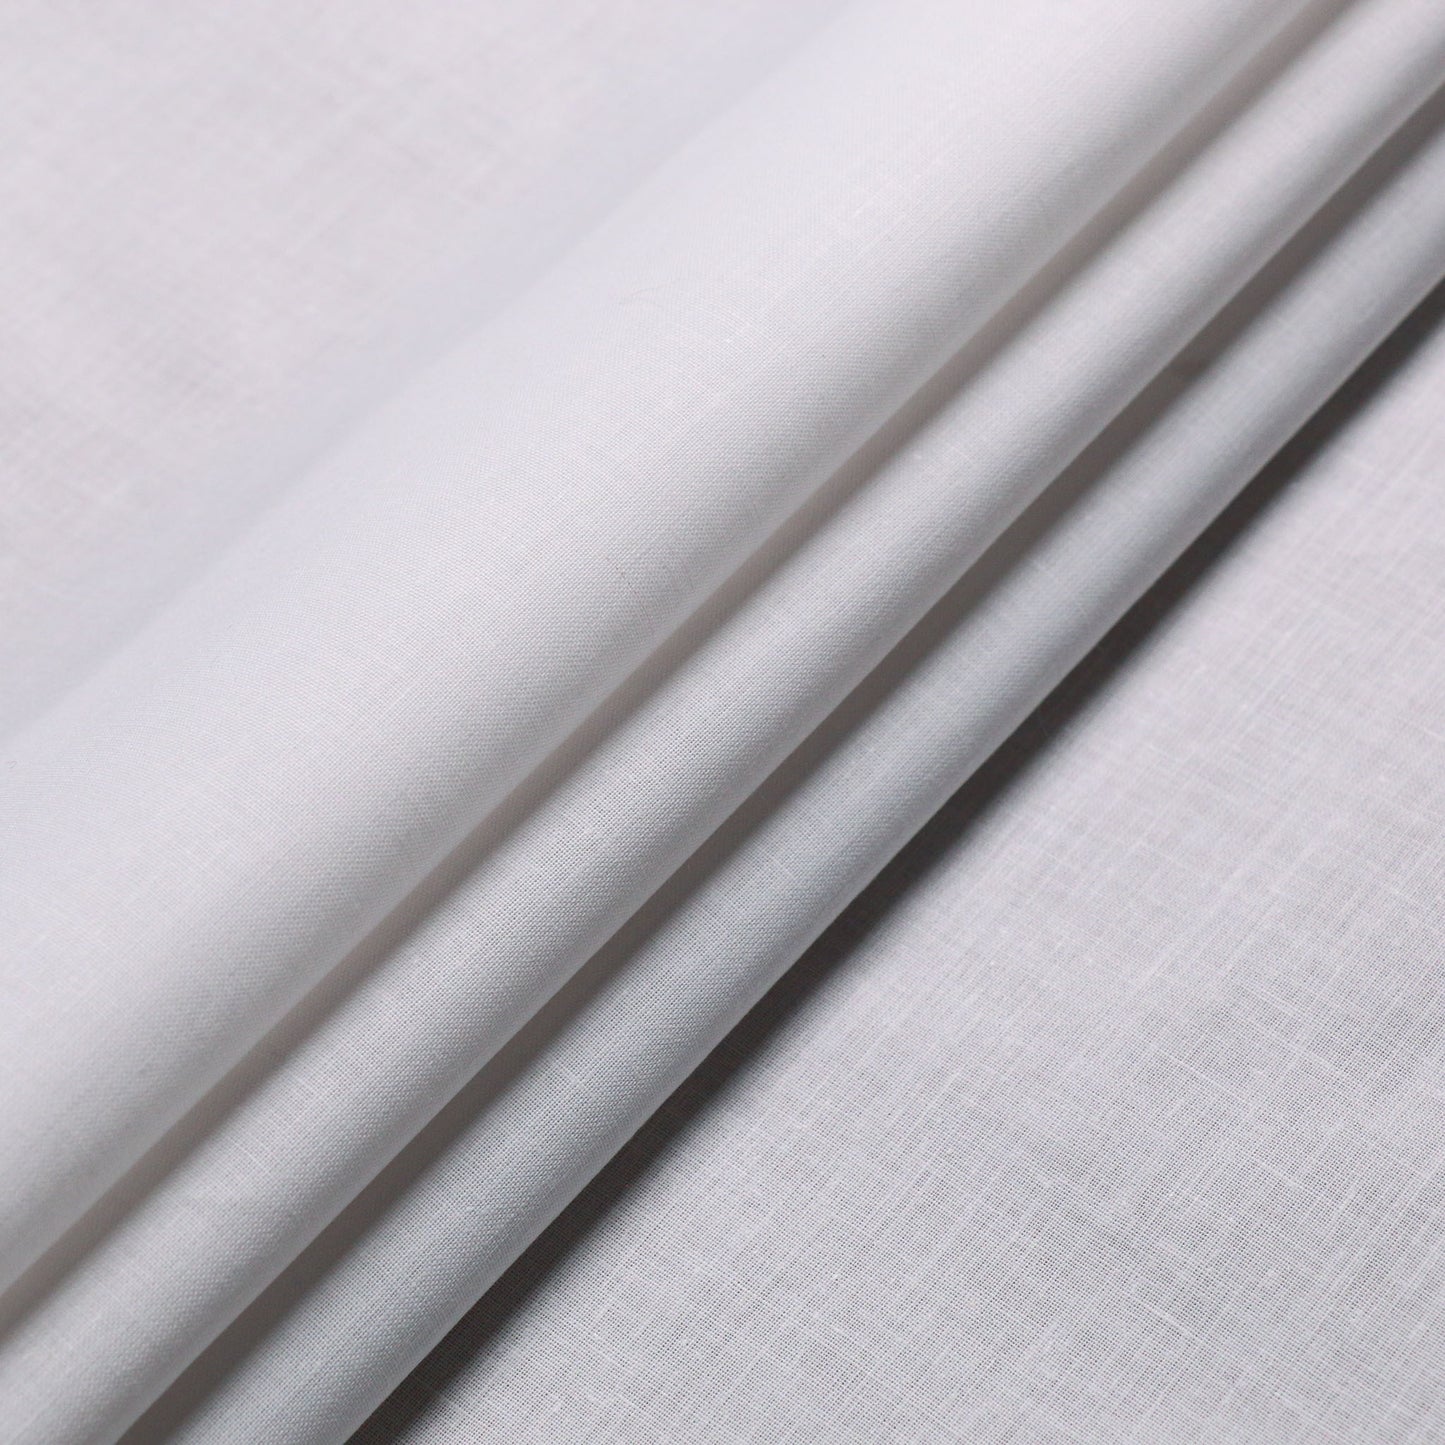 plain white folded cotton dressmaking fabric